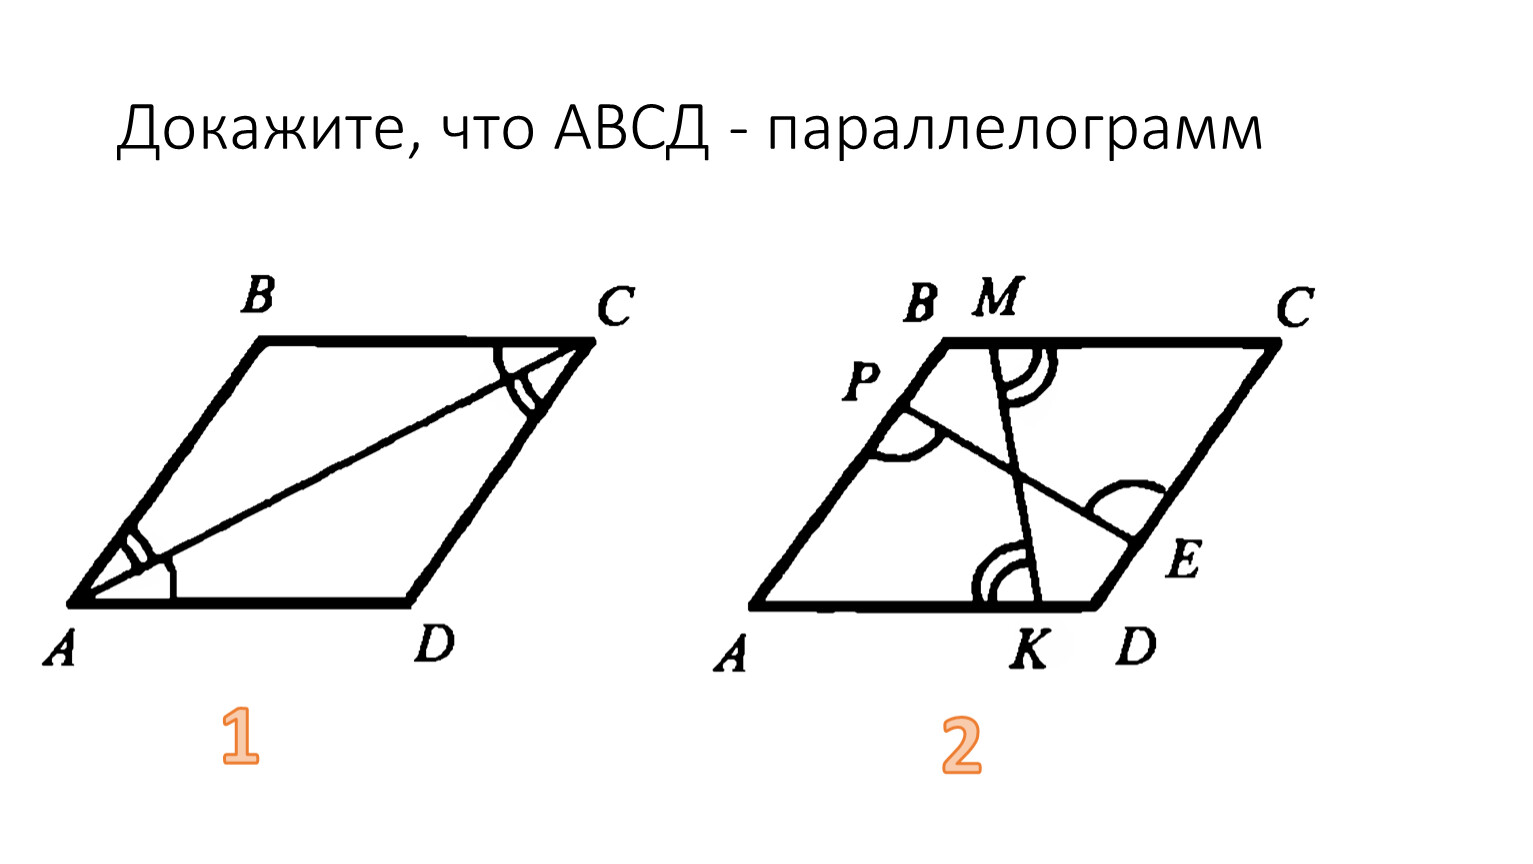 В четырехугольнике авсд ав равен сд. Параллелограмм АВСД. Докажите что АВСД параллелограмм. Доказать что АВСД параллелограмм. Доказать что АБС параллелограмм.